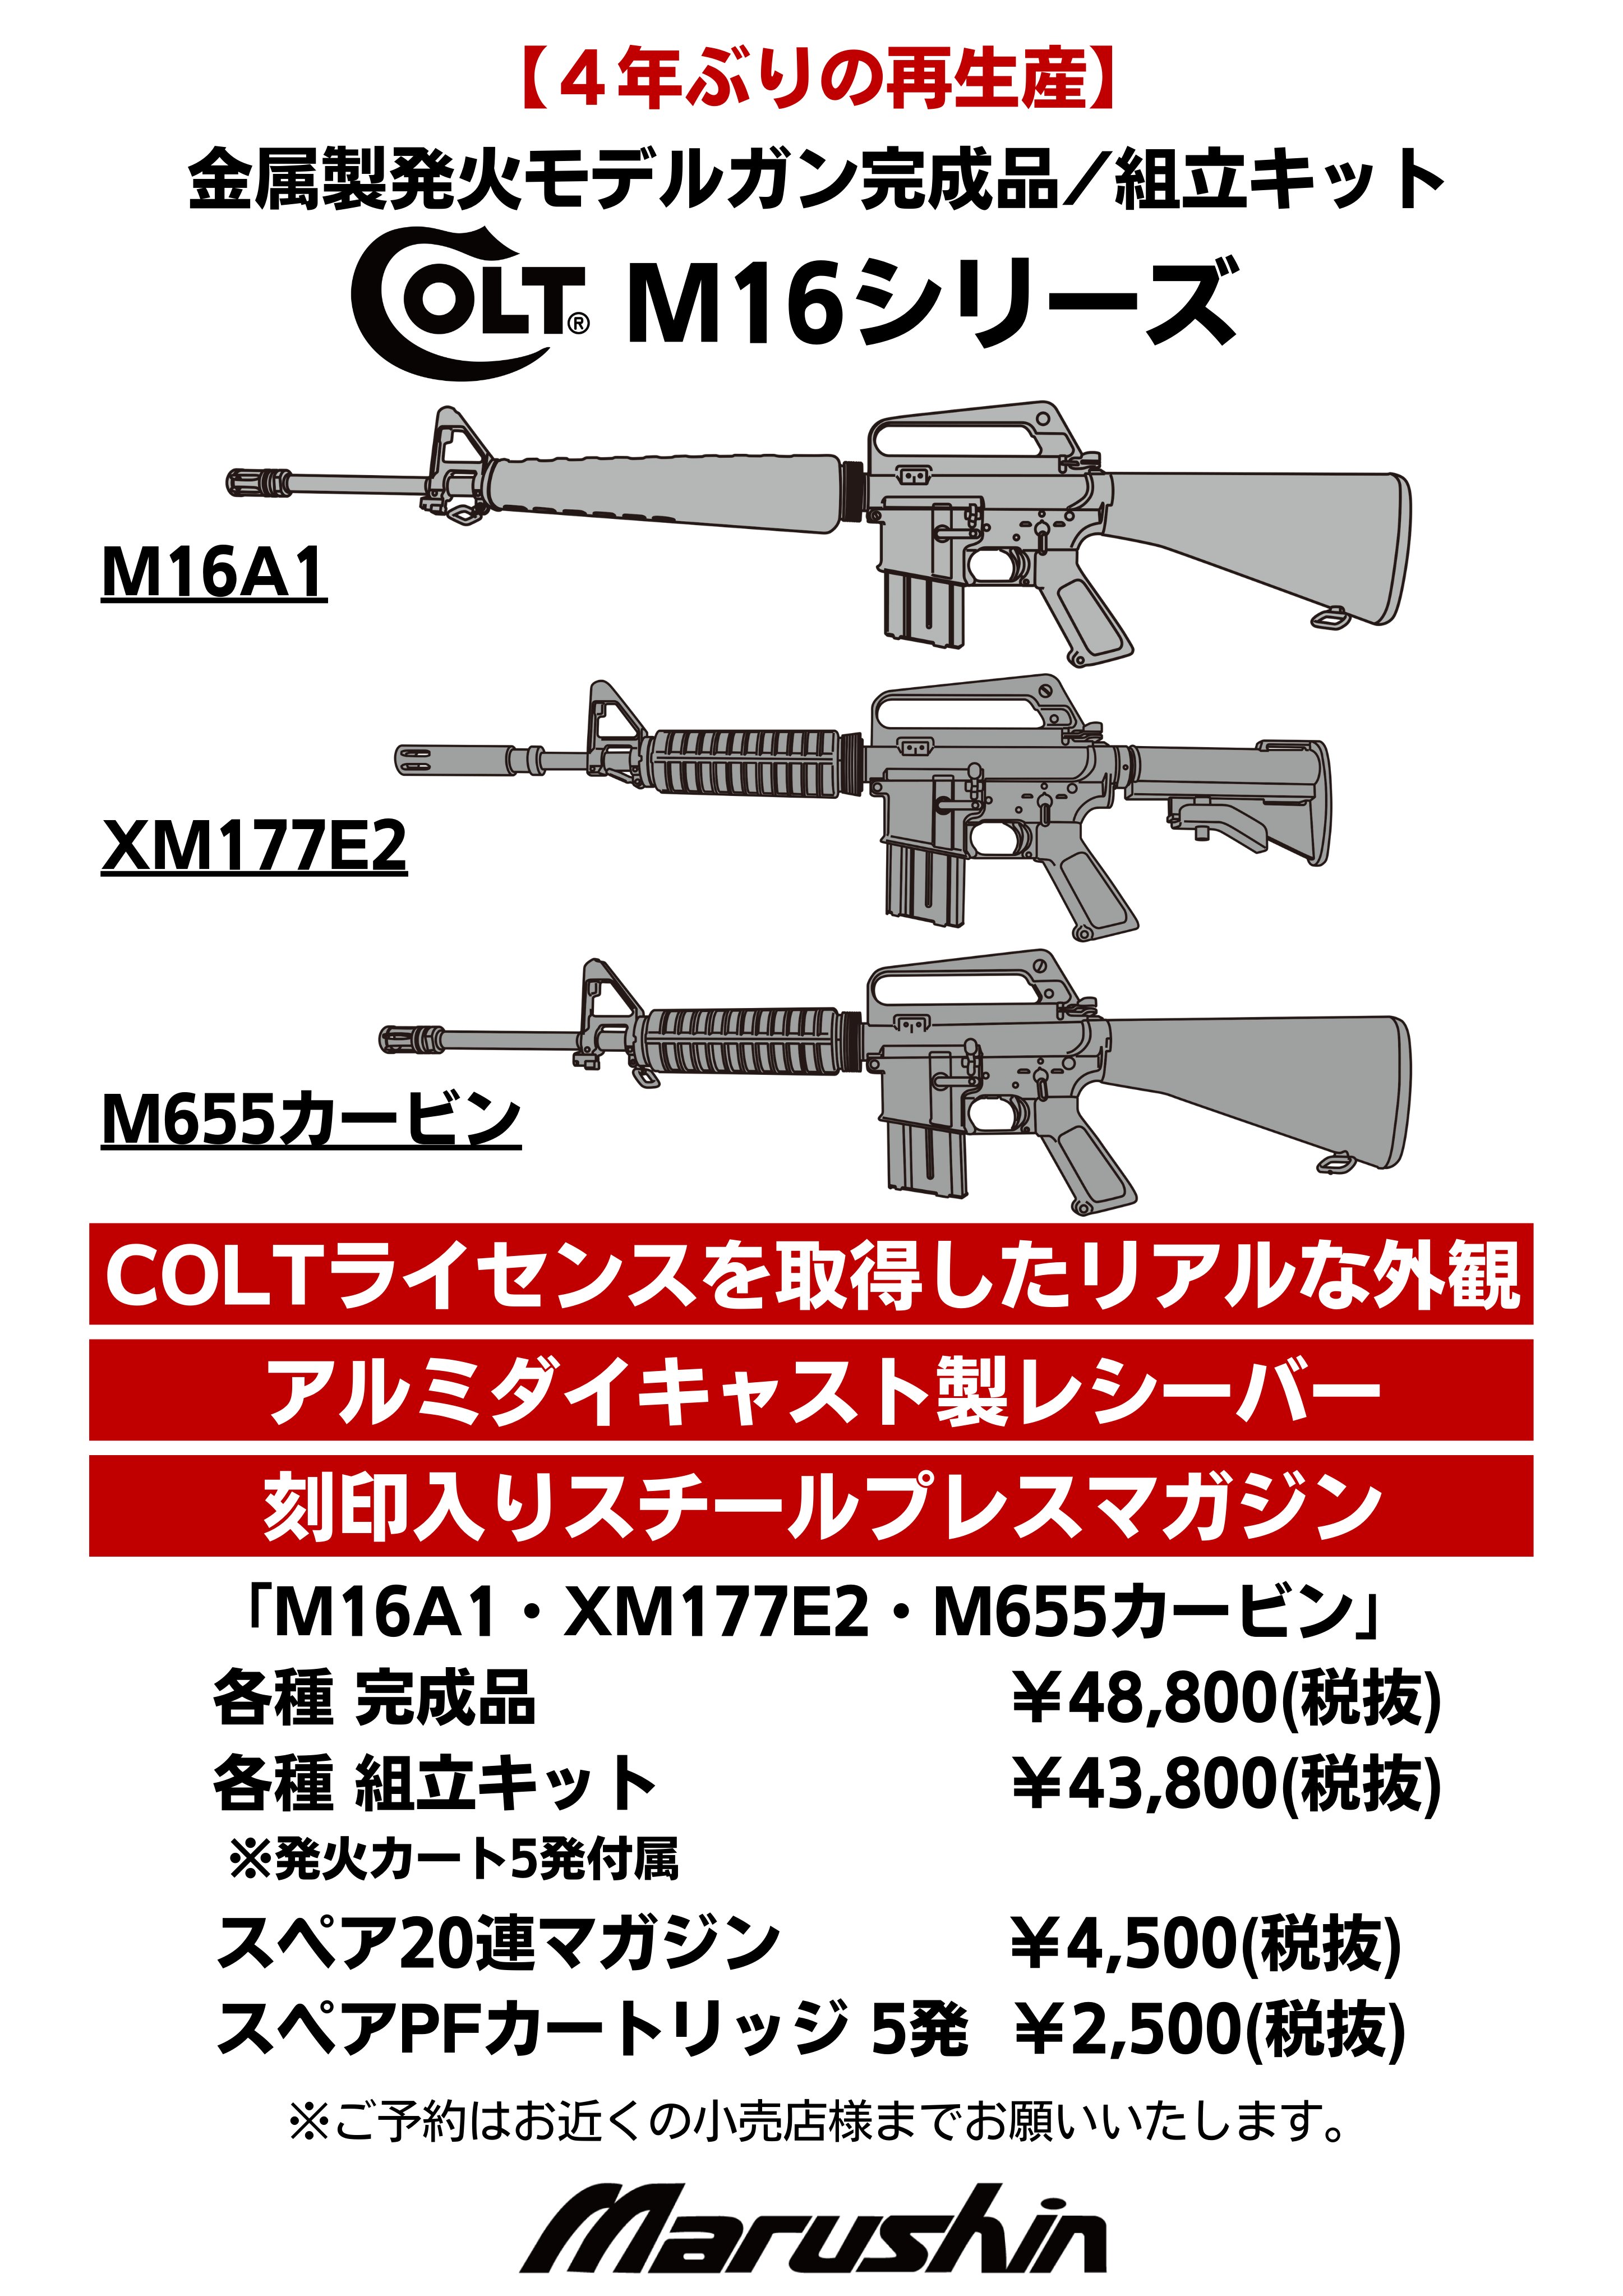 極上品M16A1 金属製モデルガン COLT モデルガン